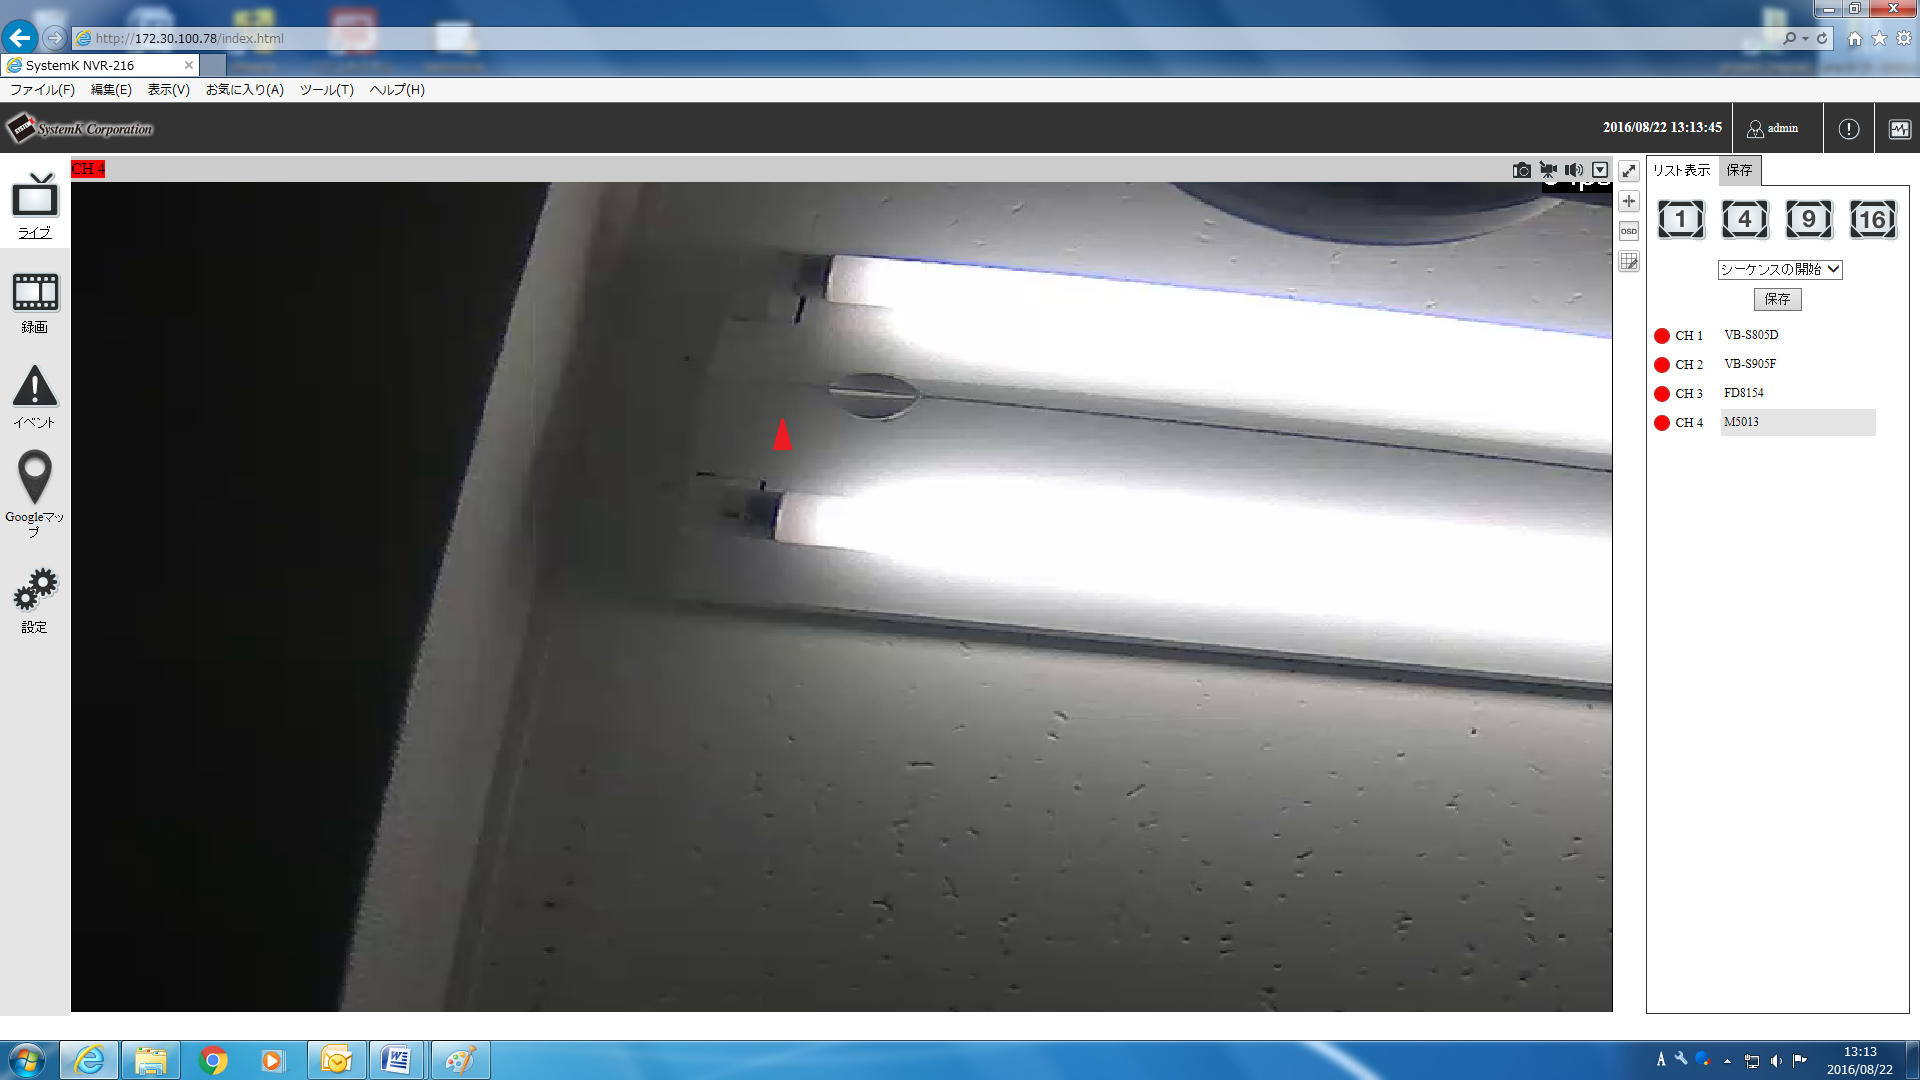 PTZに対応したカメラでは、ライブ画面上にマウスをもっていくと、赤い三角形が表示されます。